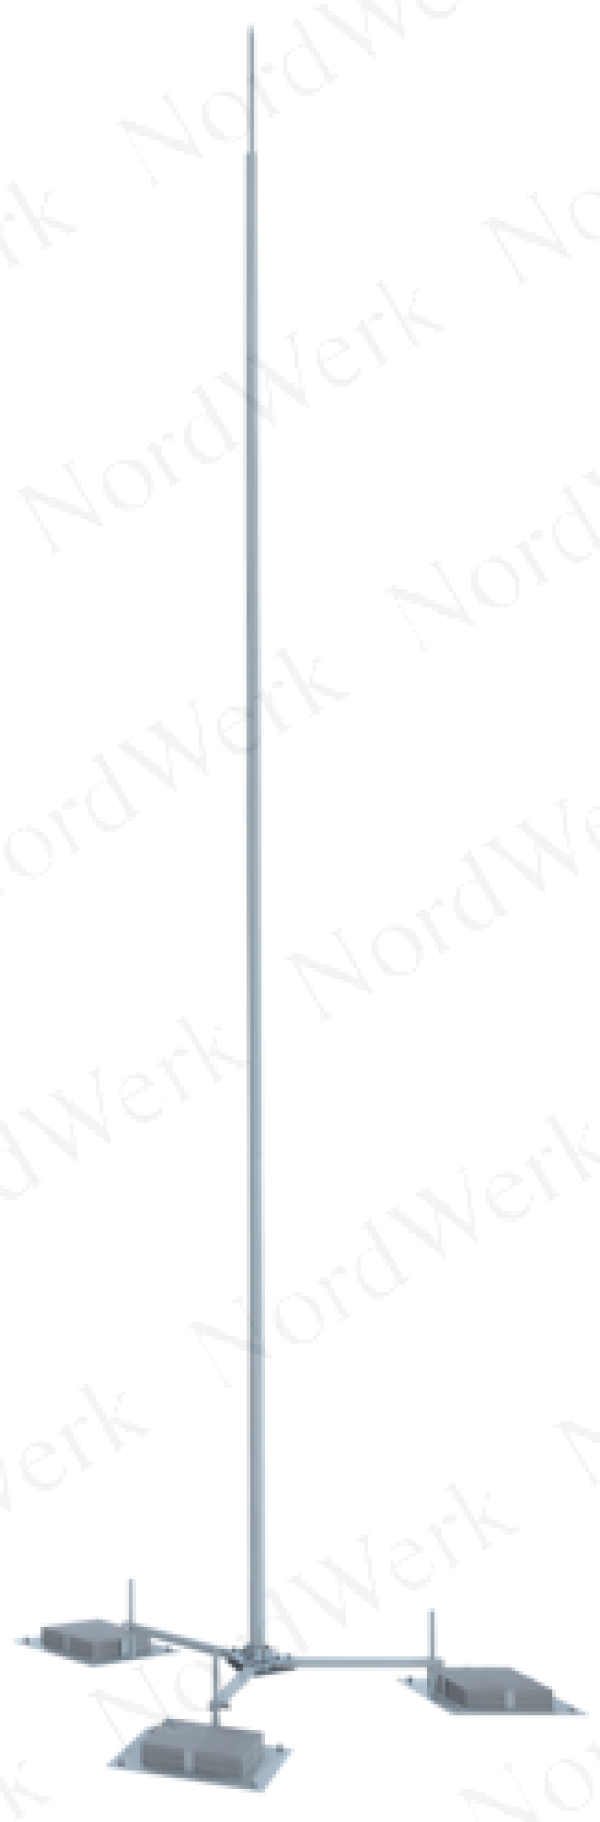 NordWerk МСАП-М-5,4-П – Молниеотвод высотой 5,4 метров (алюминий; с основанием под плитку)